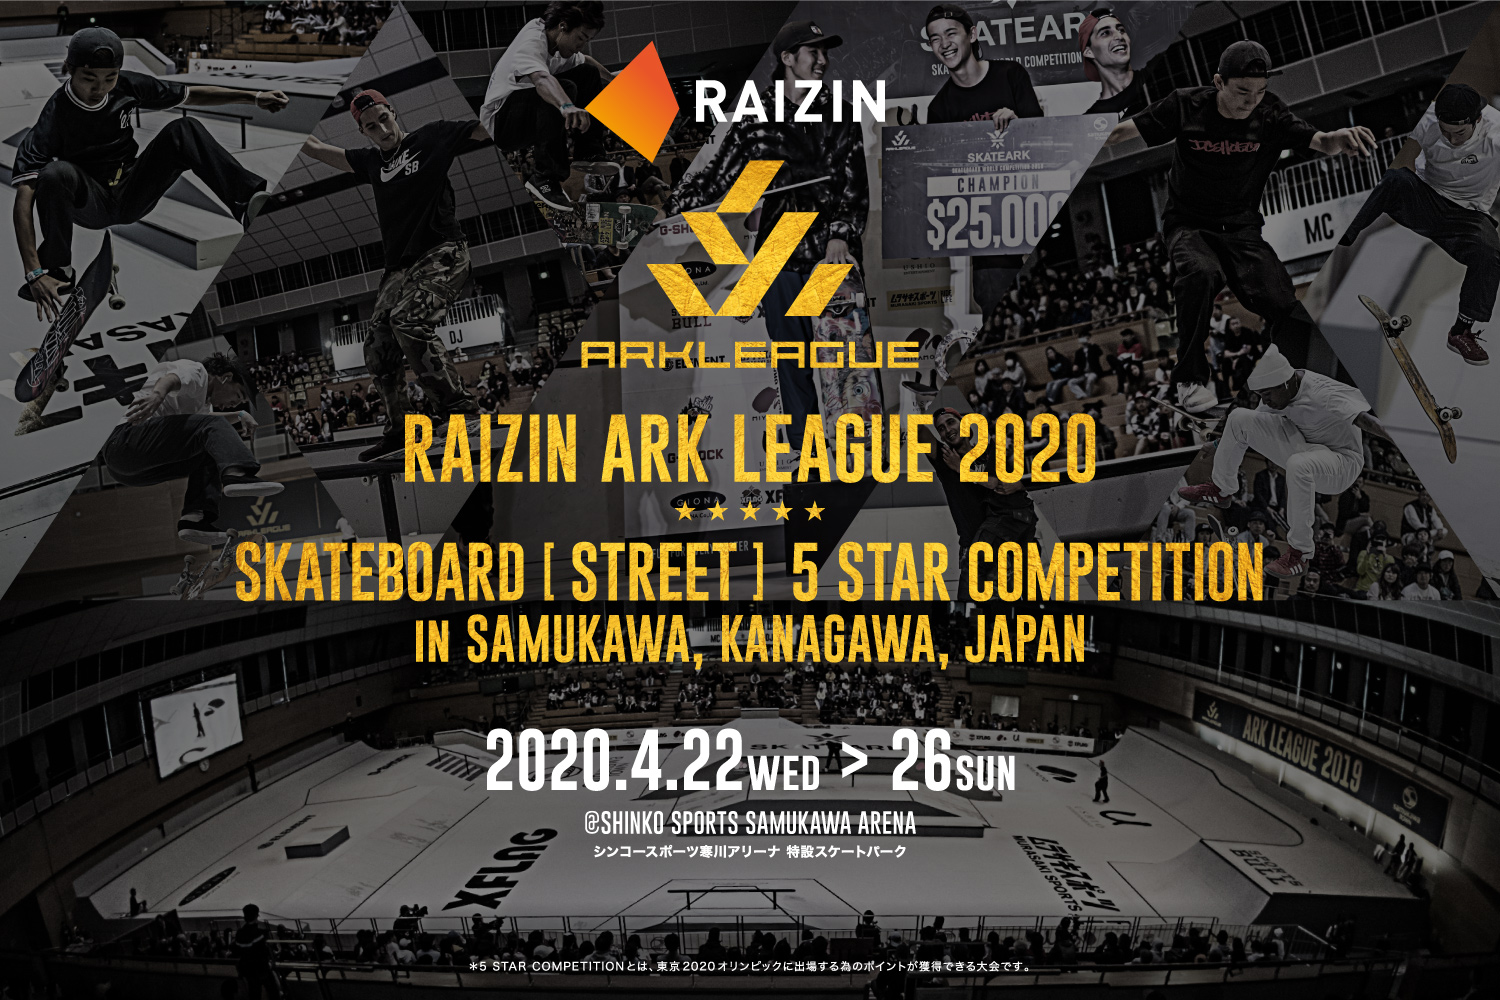 RAIZIN ARK LEAGUE 2020 SKATEBOARD [STREET] 5 STAR COMPETITION IN SAMUKAWA, KANAGAWA, JAPAN